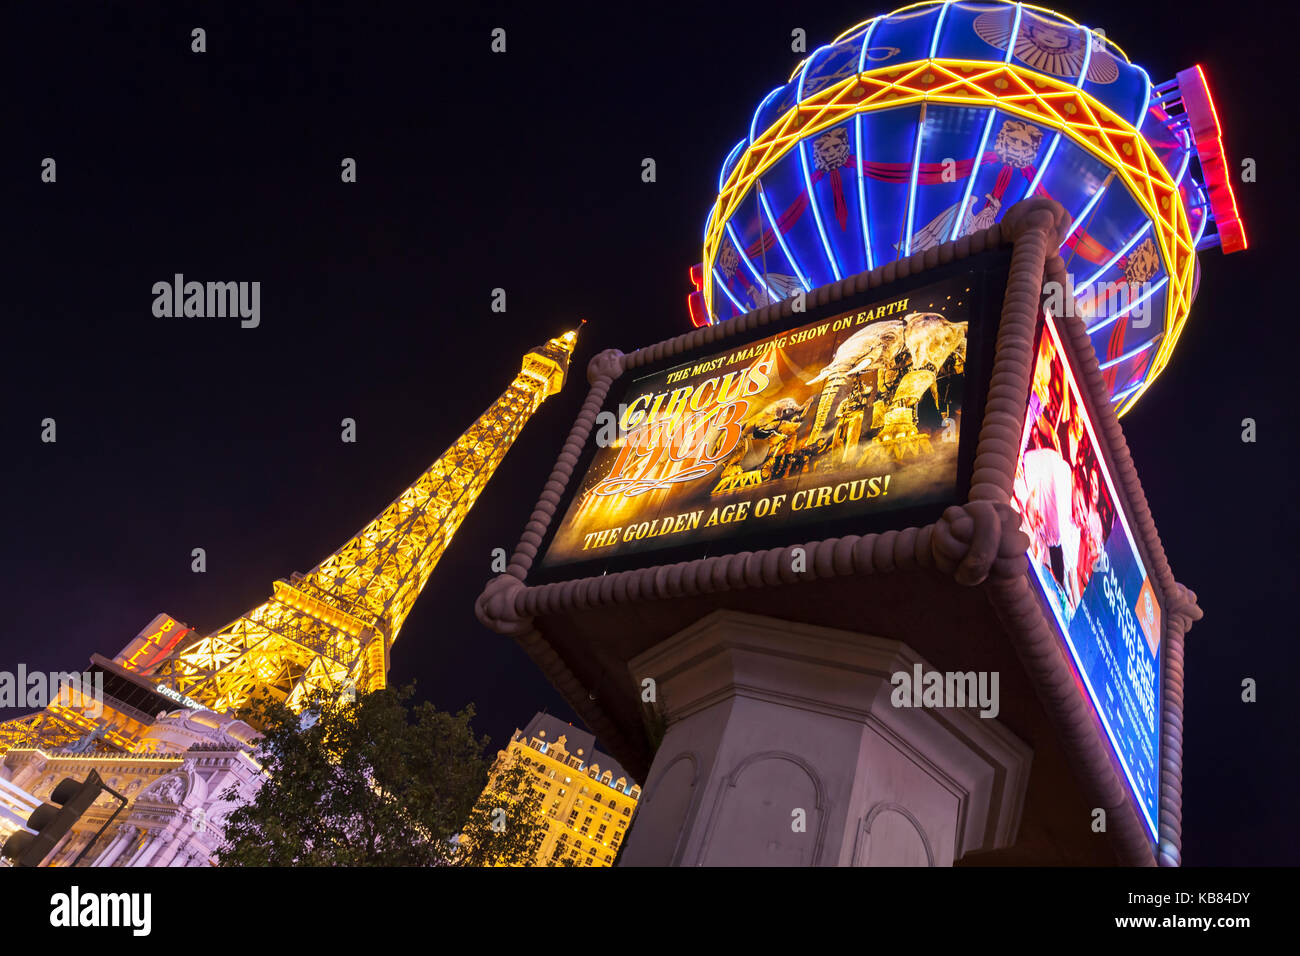 A nighttime view of the Paris Las Vegas on Las Vegas Blvd in Las Vegas, Nevada. Stock Photo